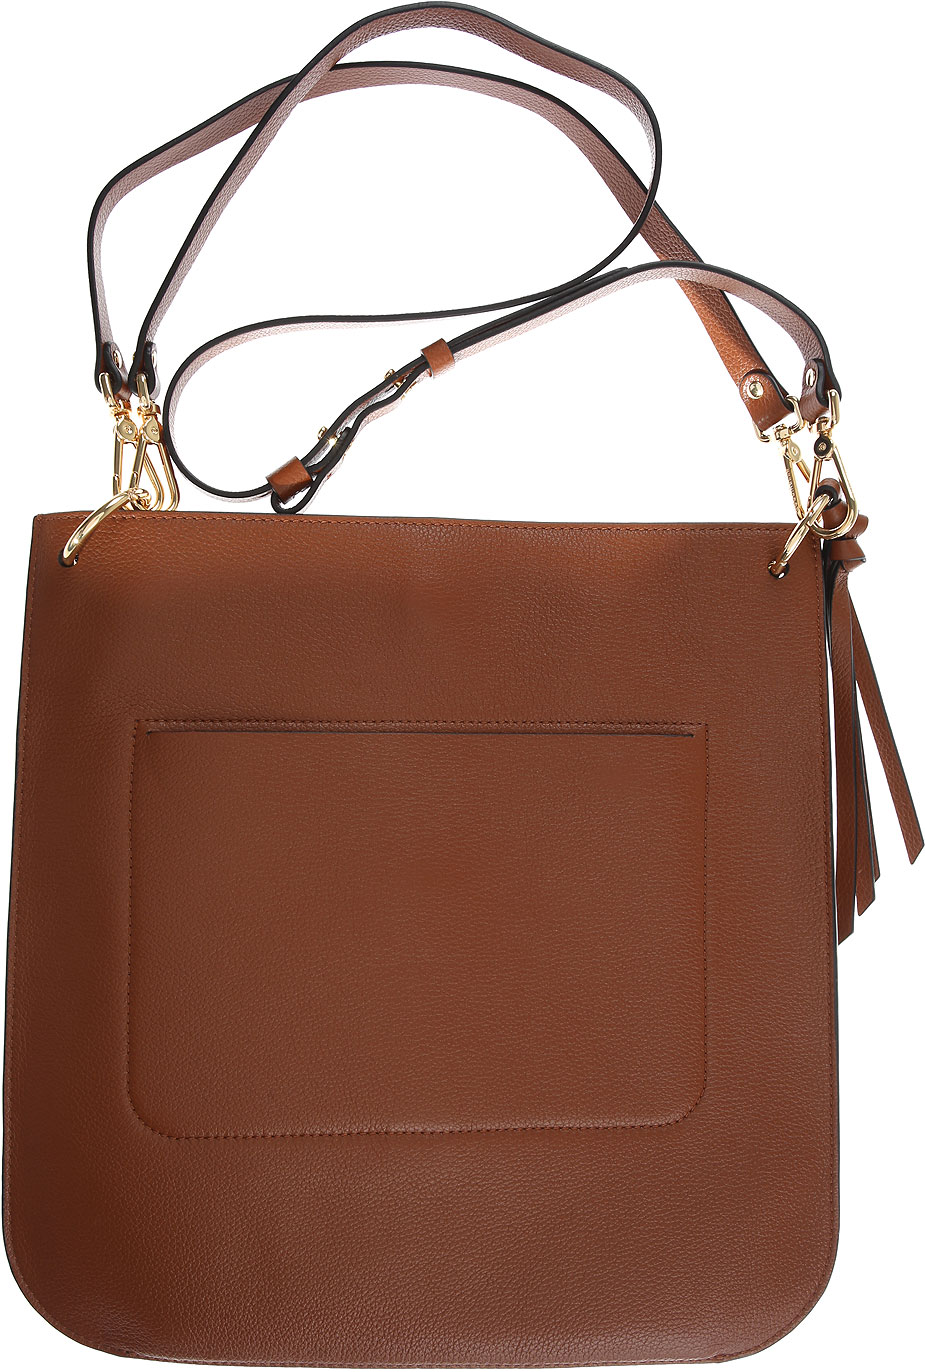 Handbags Coccinelle, Style code: e1cb0130101-w74-